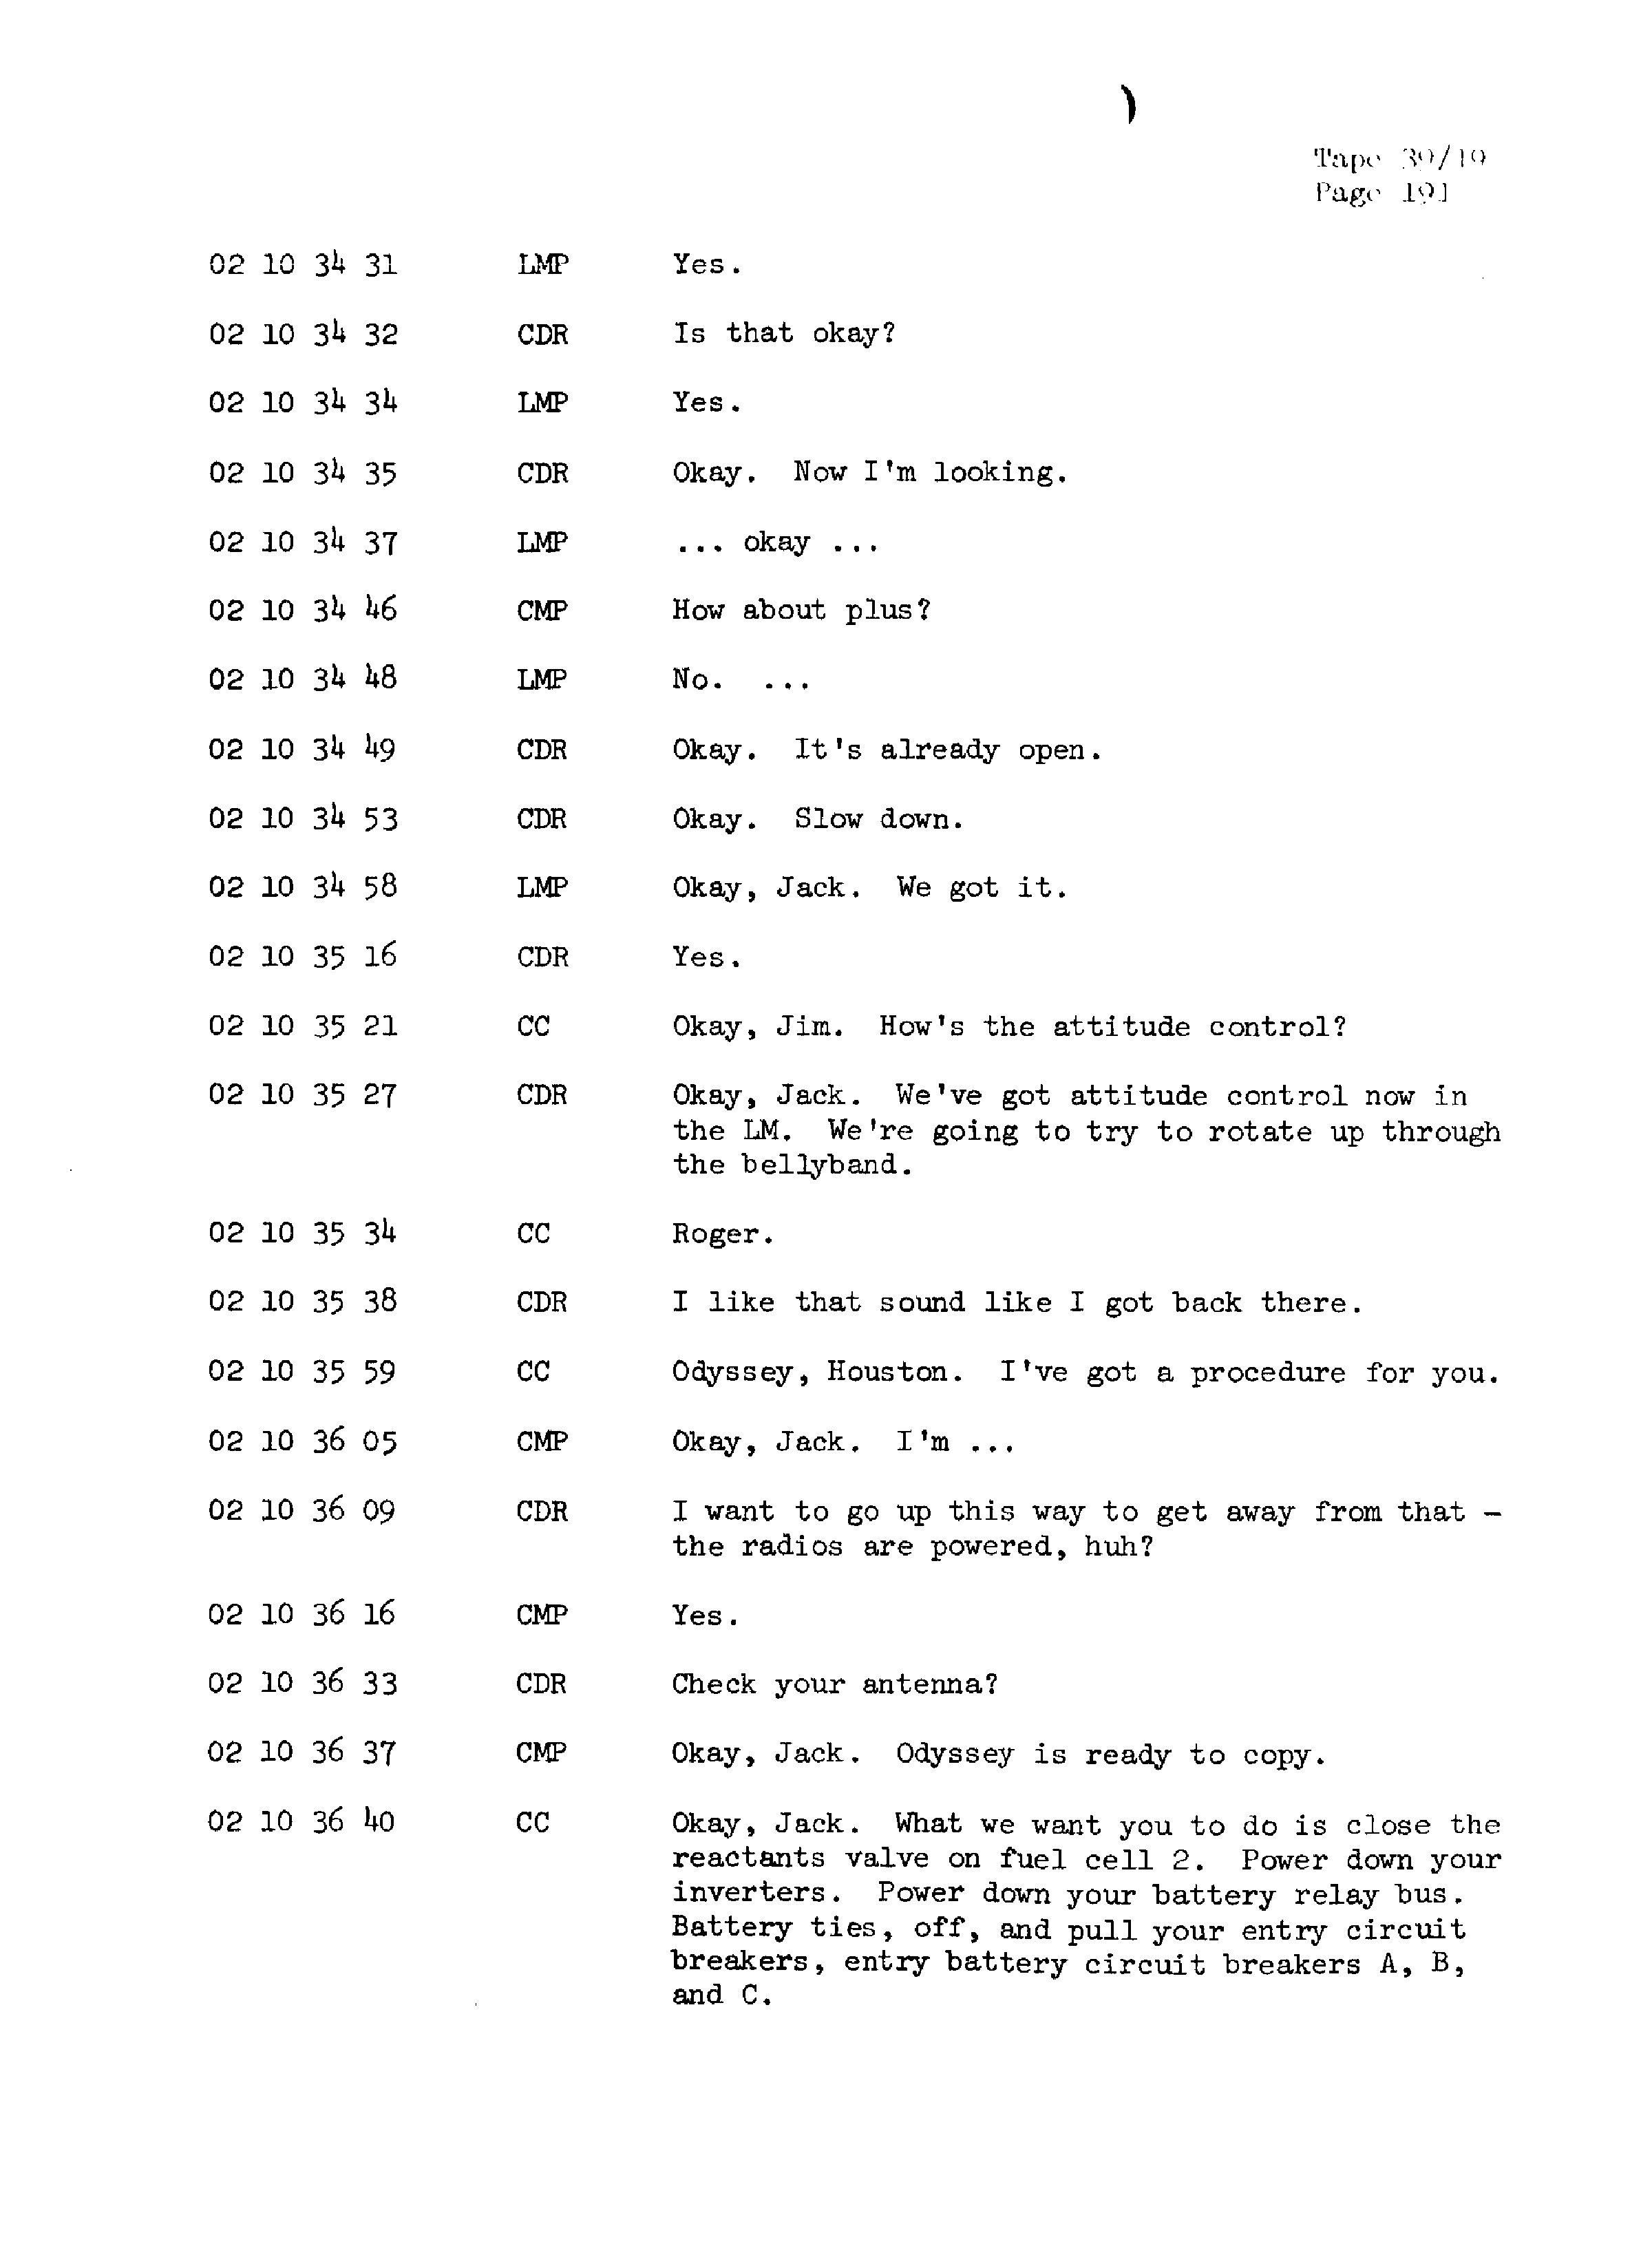 Page 198 of Apollo 13’s original transcript